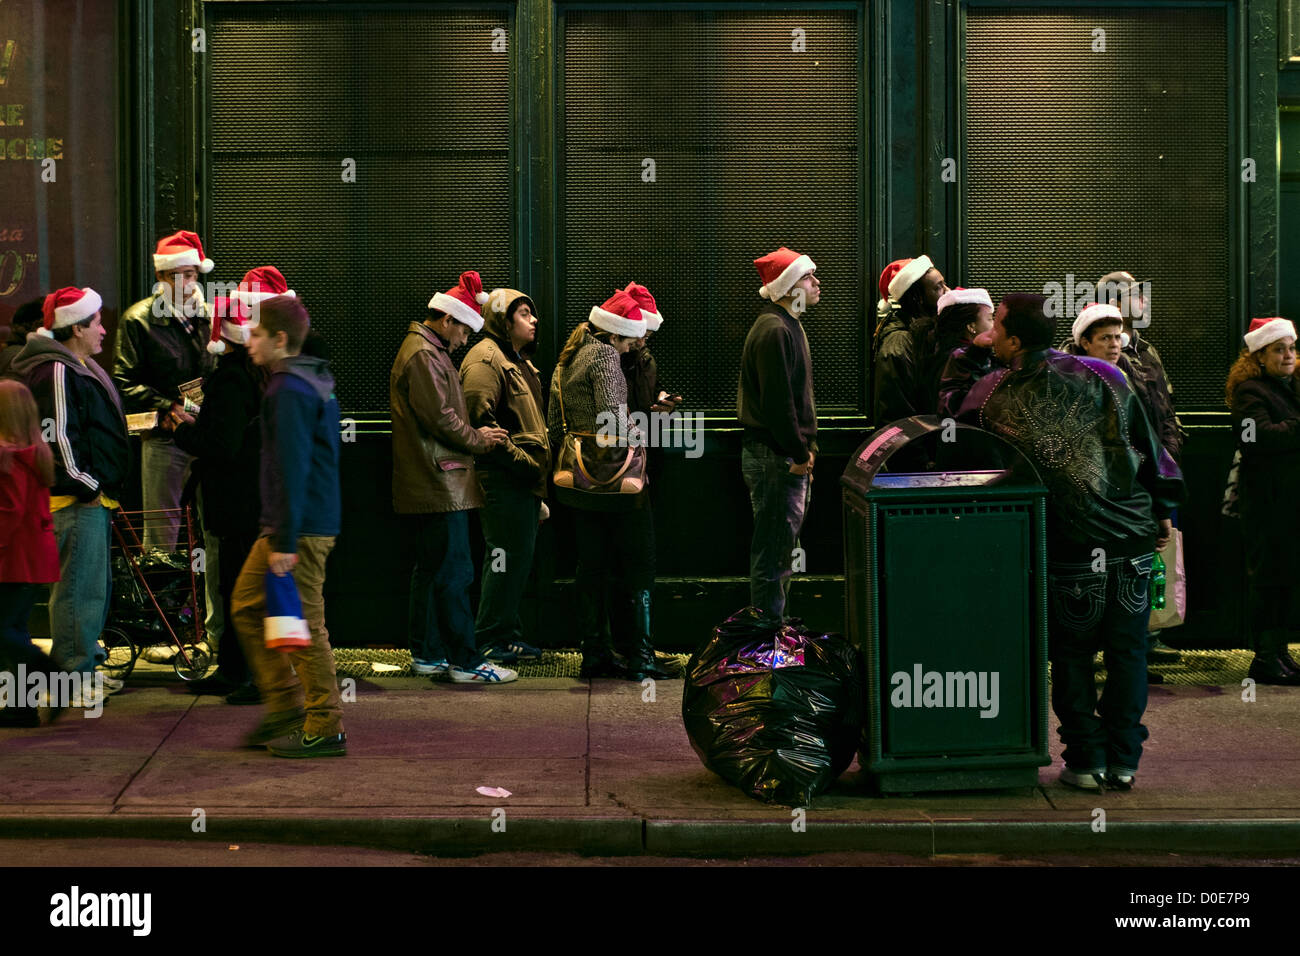 Novembre 22, 2012, New York, NY. Persone che indossano Santa Claus cappelli supporto in linea per prendere vantaggio di vendita vacanza al Times Square Toys R Us store, che apre alle 8 del pomeriggio del Giorno del Ringraziamento vacanza. La linea era uno-e-un-metà blocchi lunghi. Foto Stock